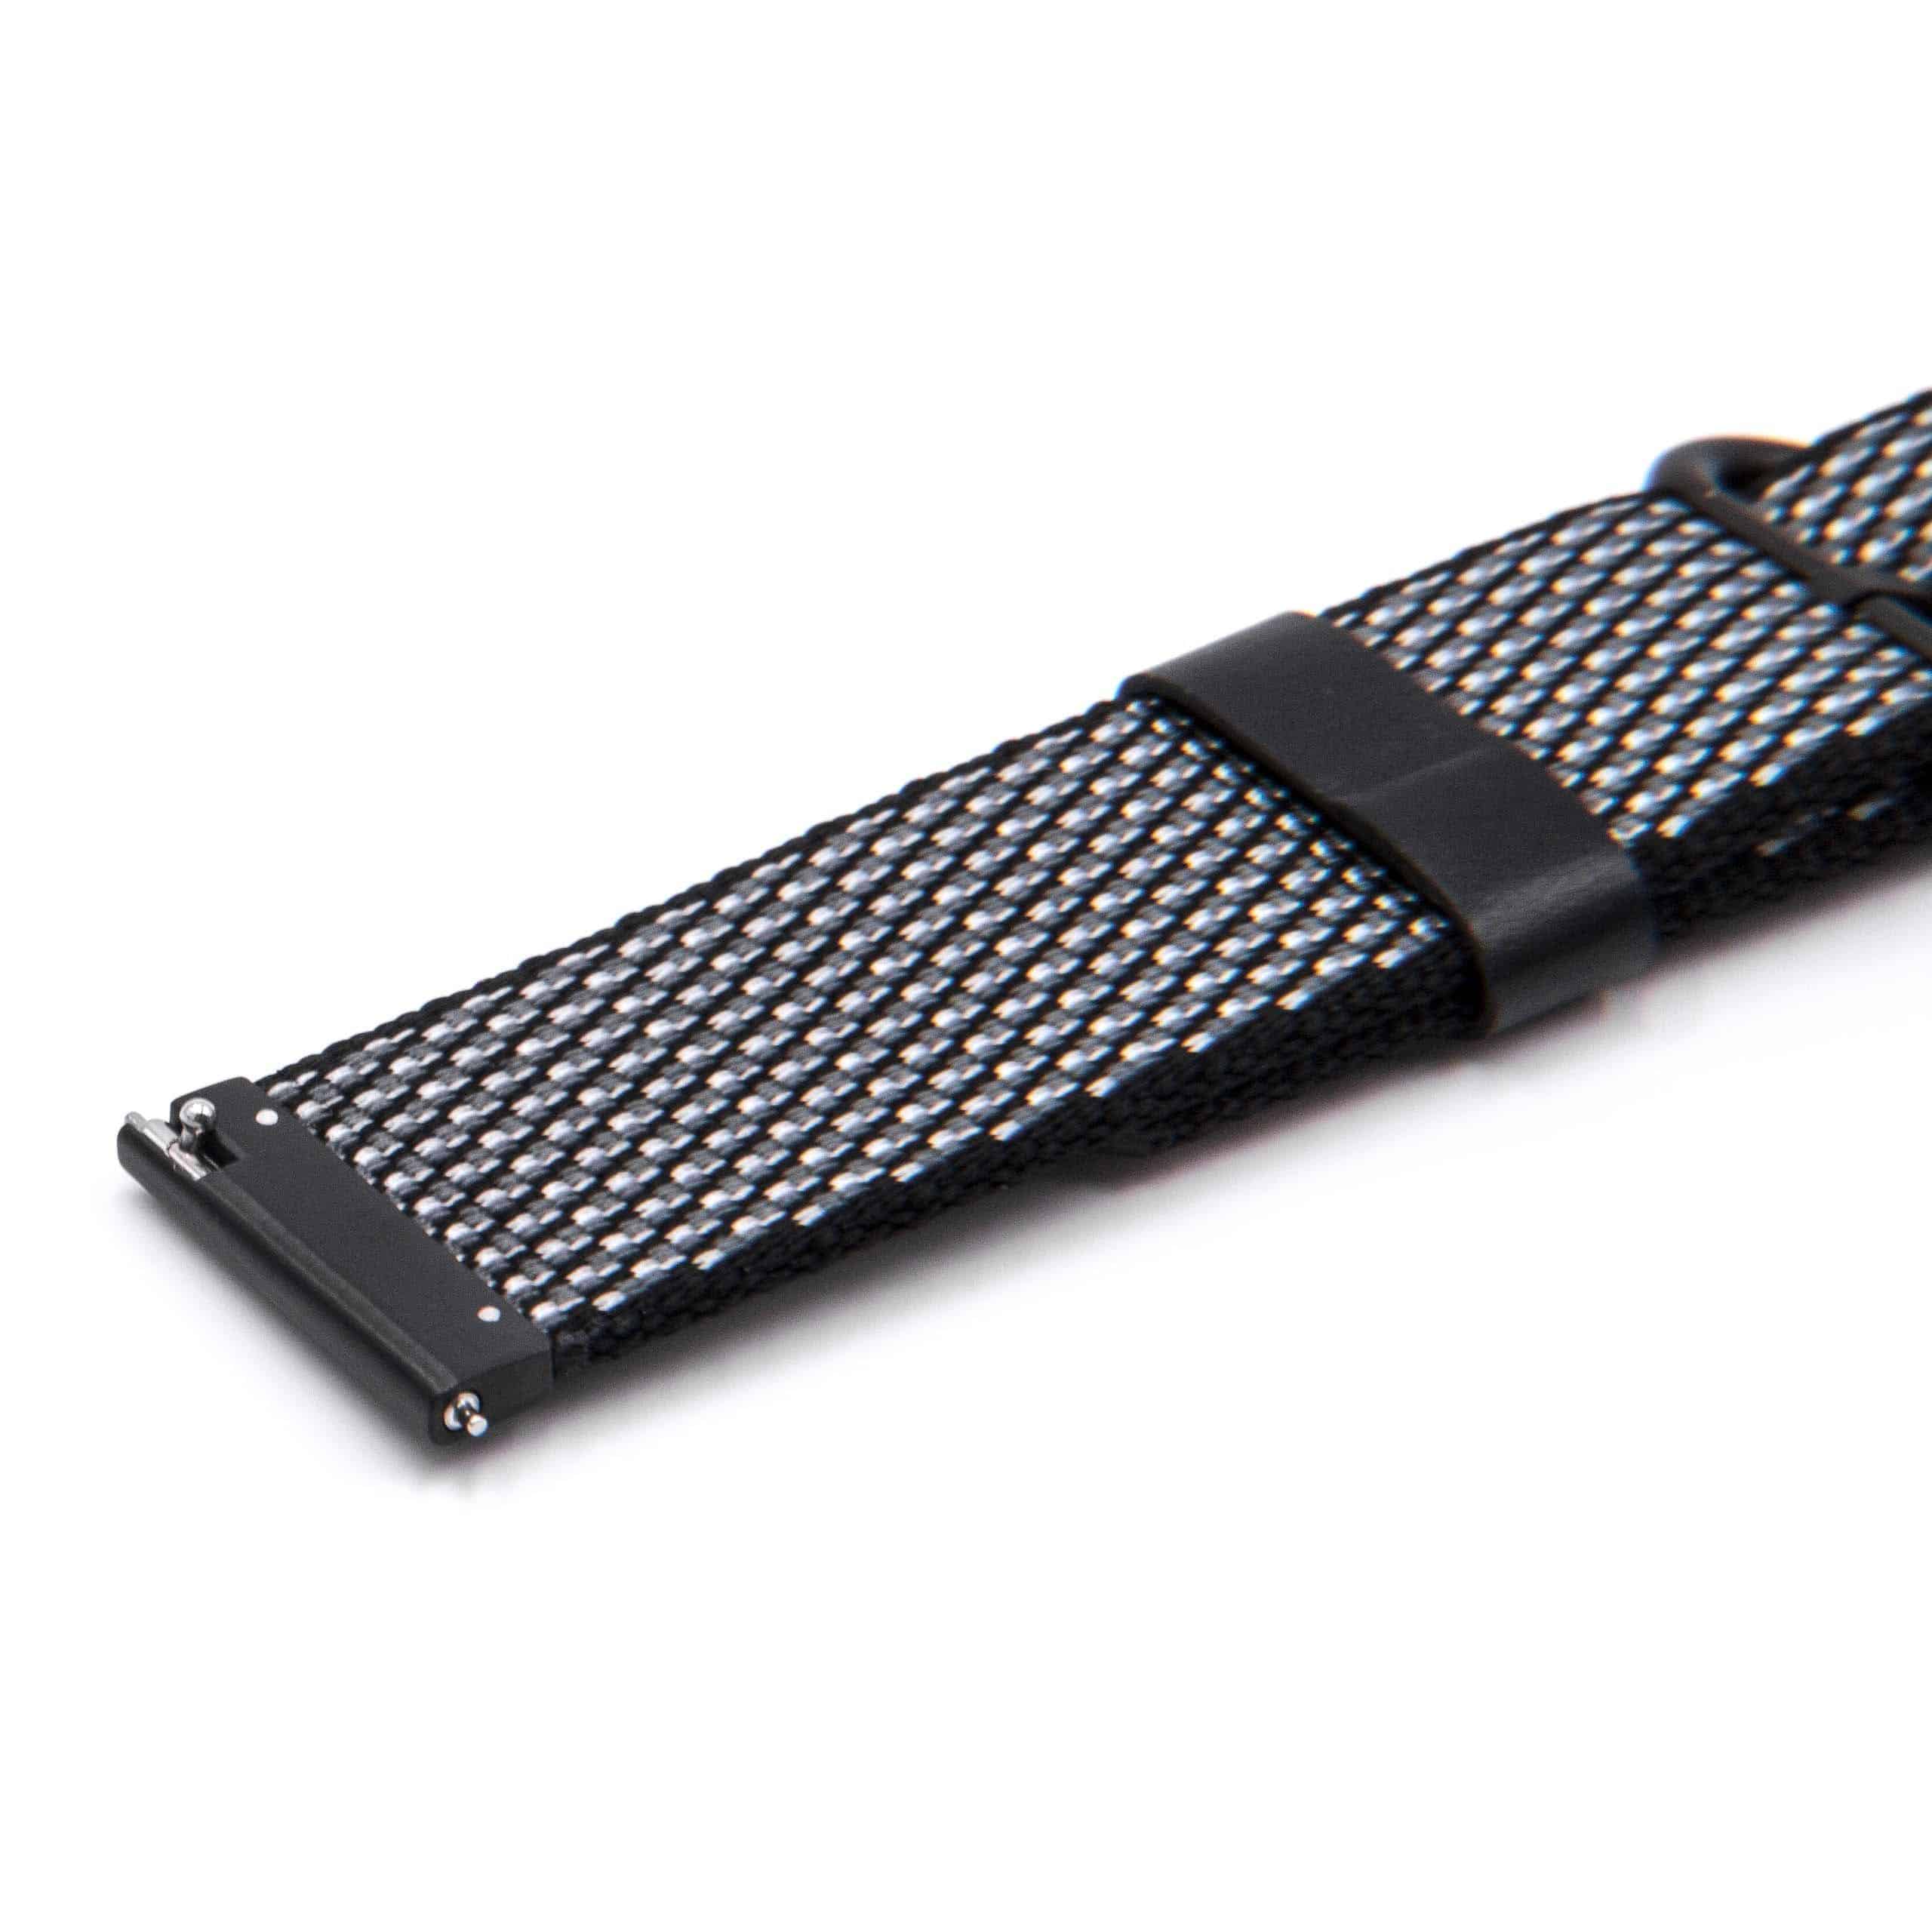 Armband für Asus ZenWatch Smartwatch u.a. - 12,3cm + 8,5 cm lang, 22mm breit, Nylon, schwarz, weiß